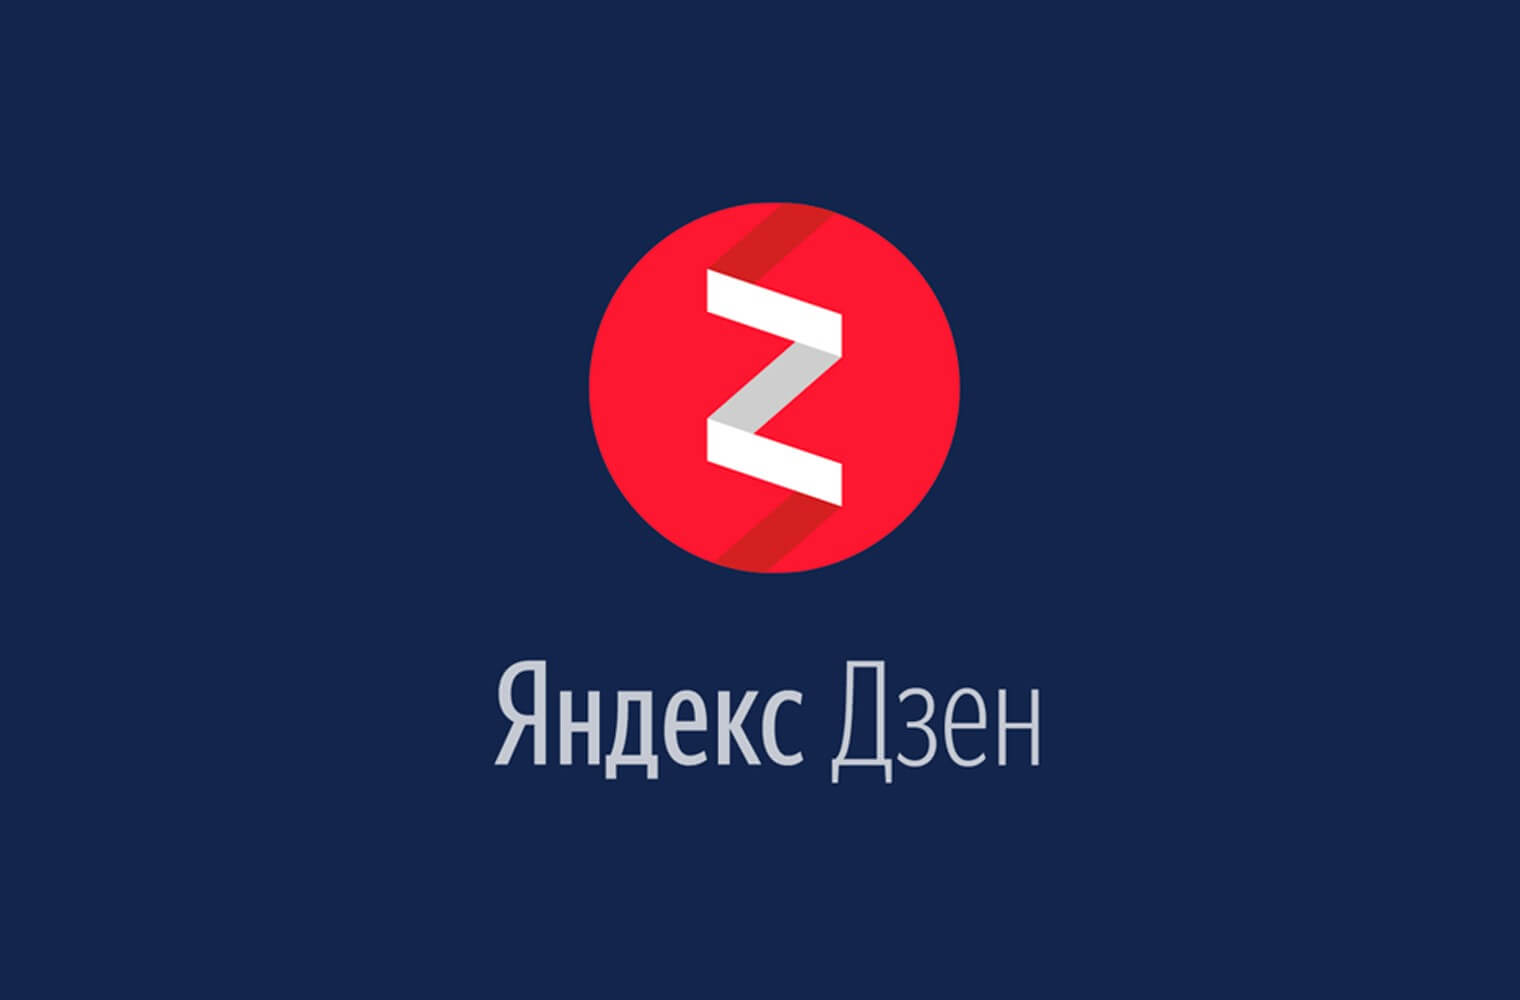 Яндекс.Дзен объявил об ограничении доступа к контенту для иностранных пользователей